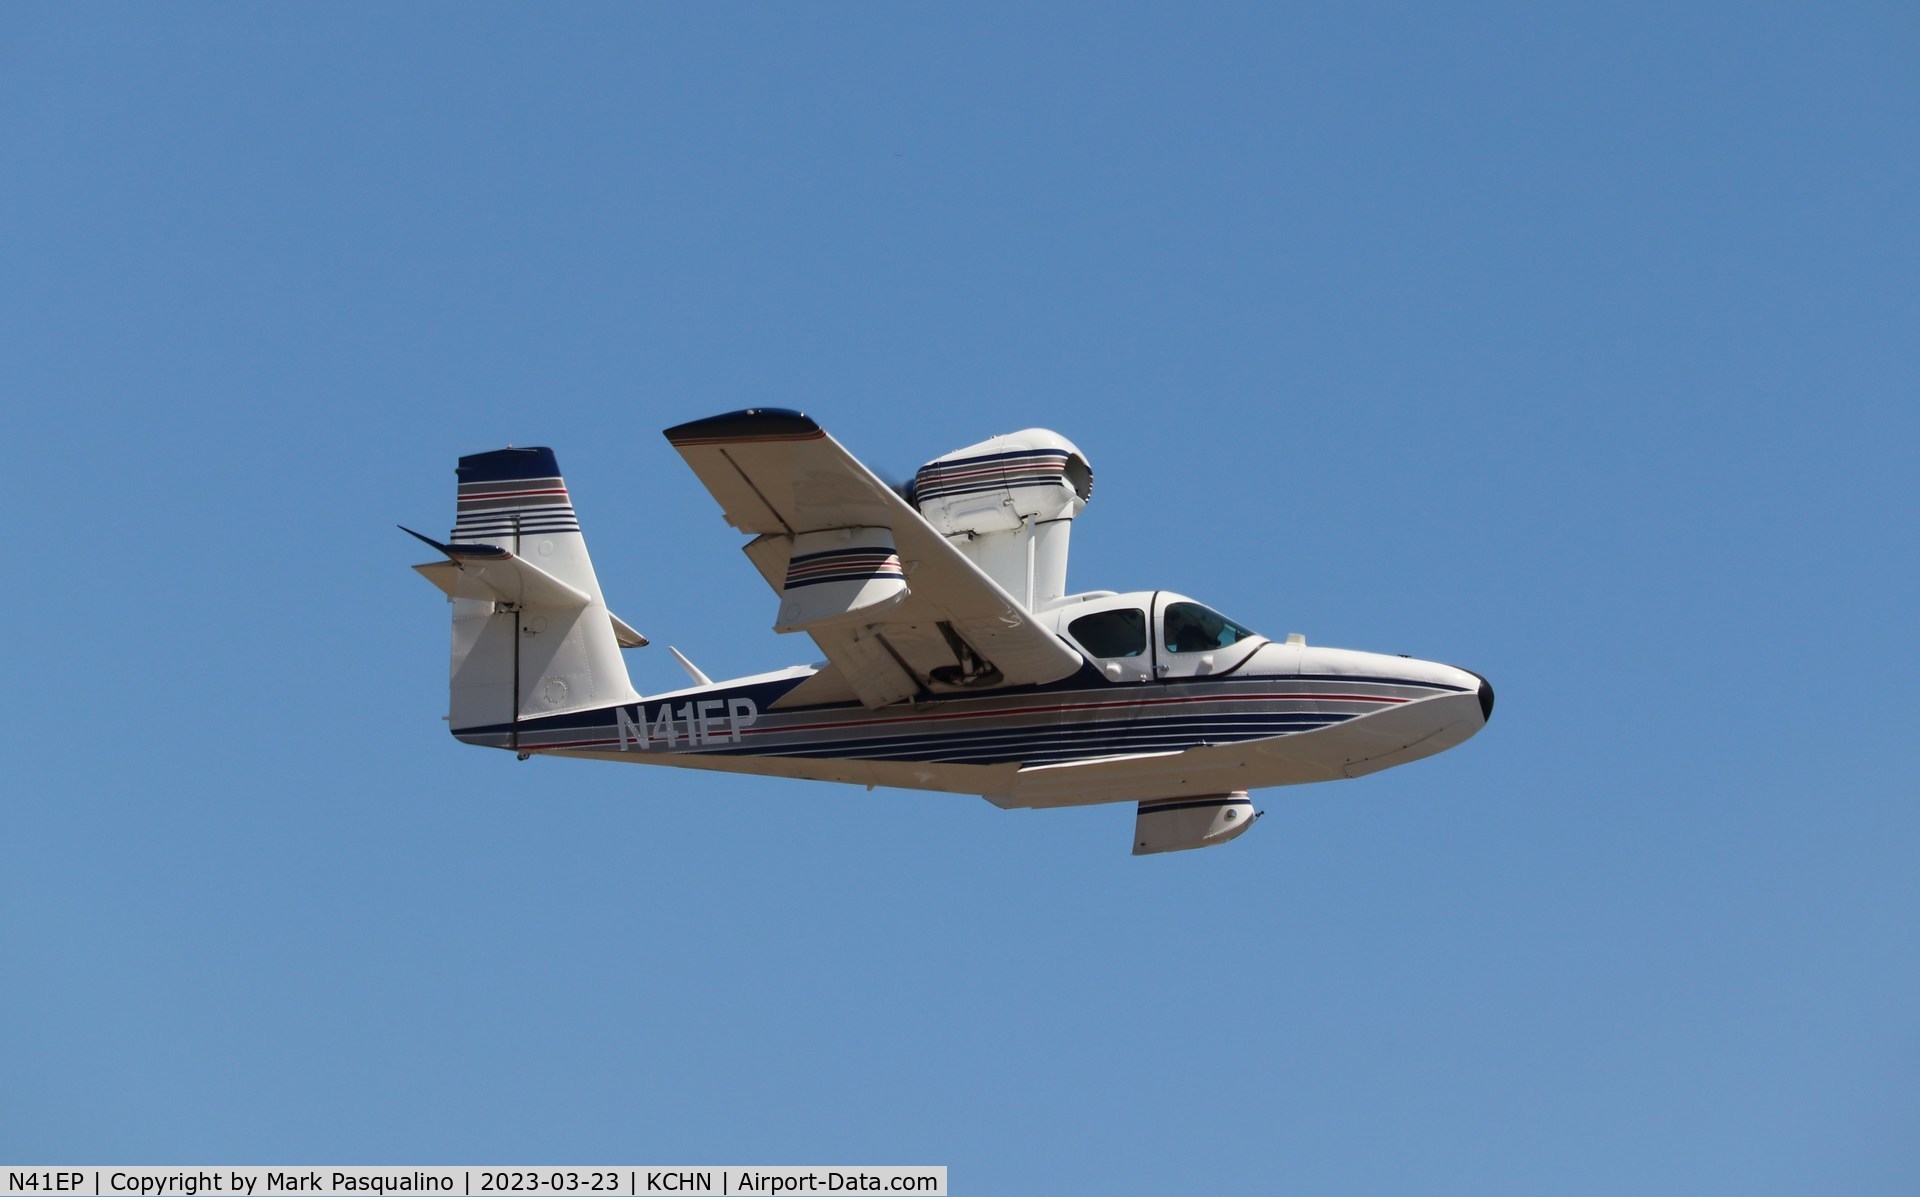 N41EP, 1982 Consolidated Aeronautics Inc. Lake LA-4-200 C/N 1083, Lake LA-4-200